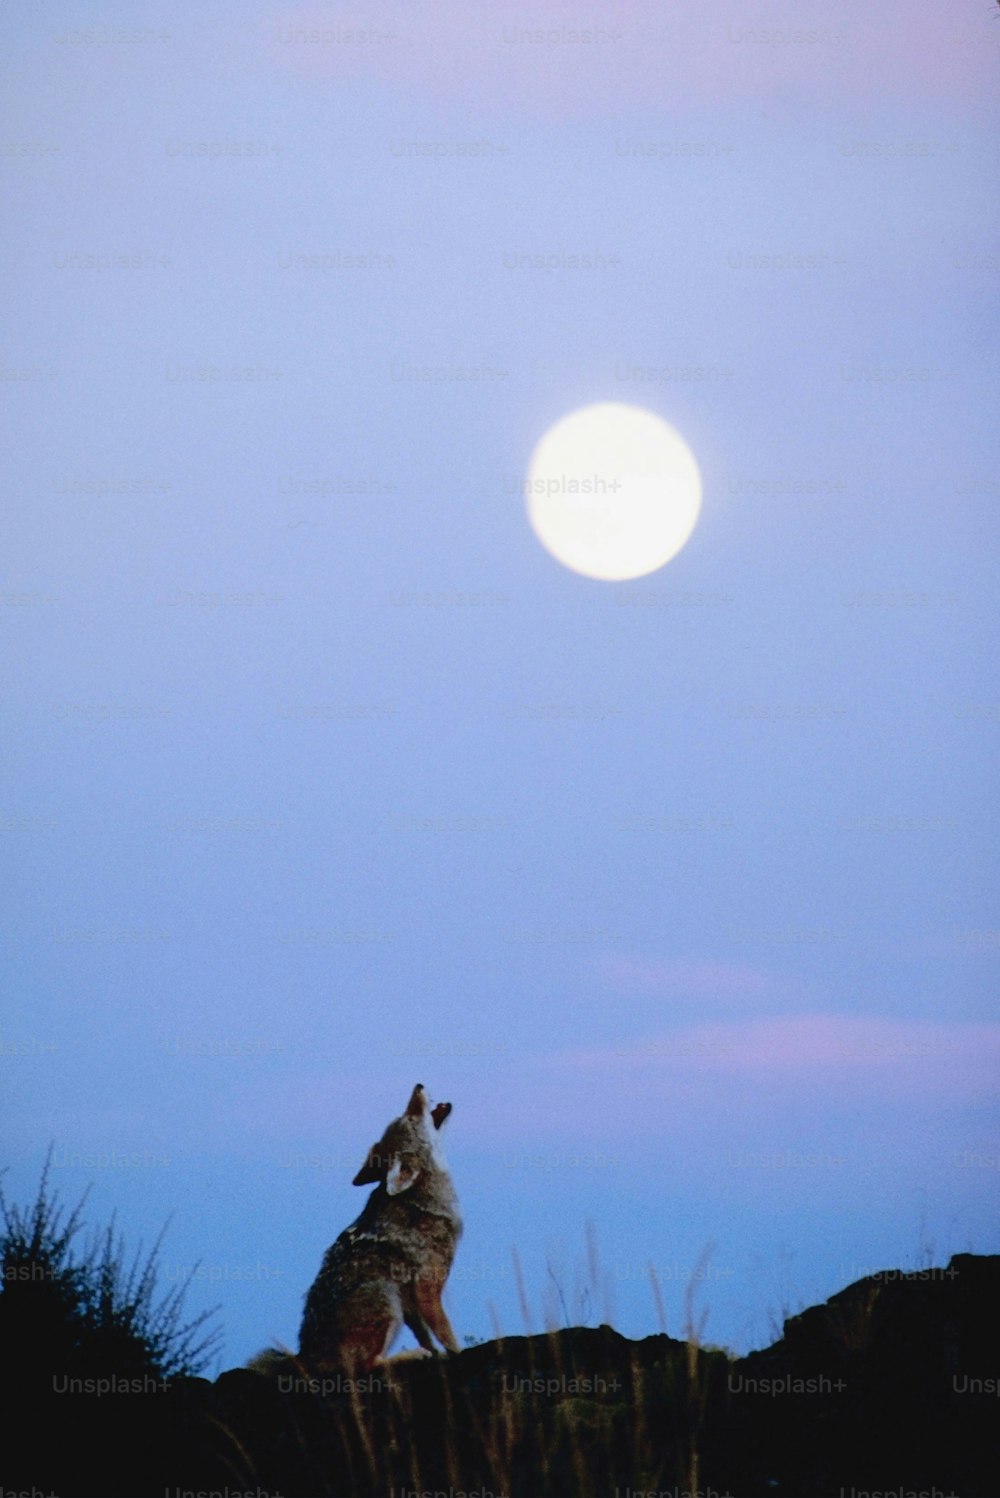 Un loup debout au sommet d’une colline sous une pleine lune